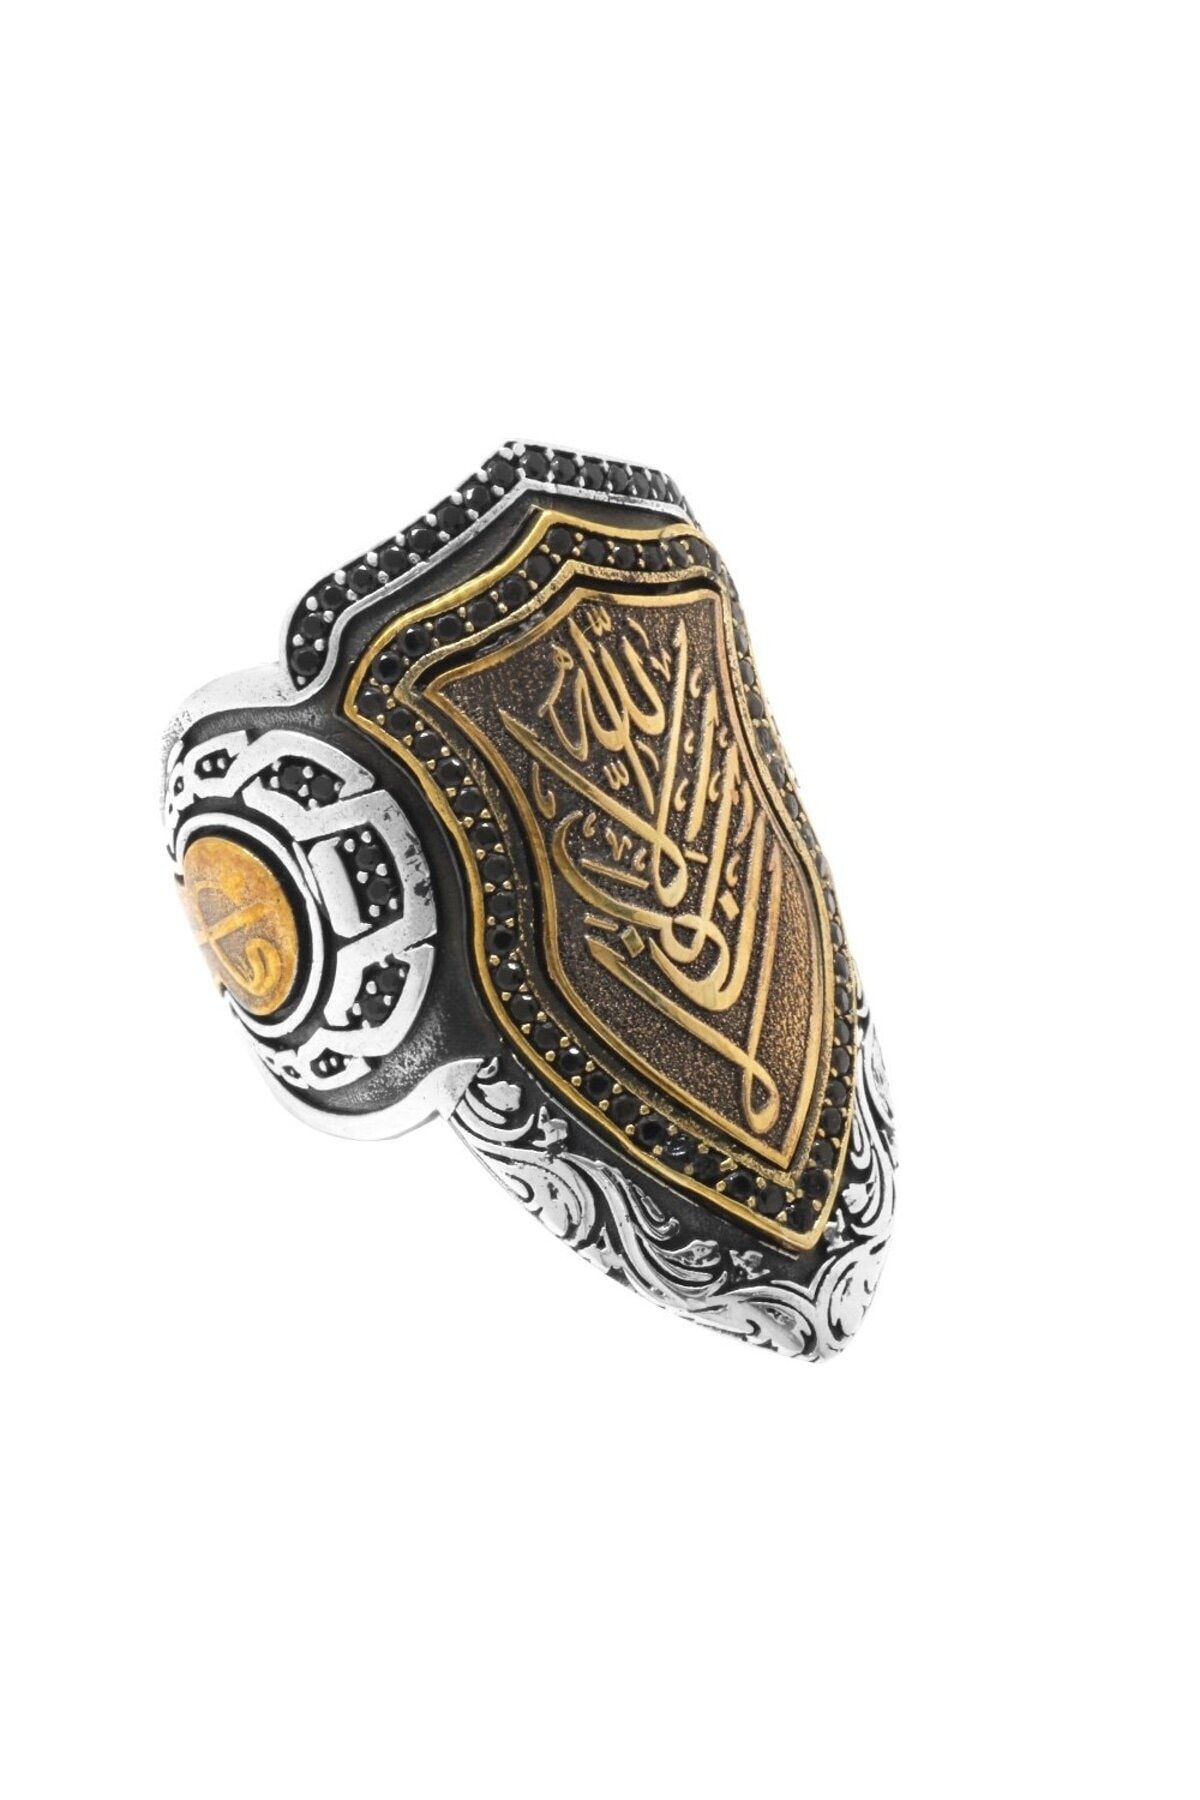 Okyanus Silver Siyah Zirkon Taşlı Mıhlamalı Arapça "Allah" Yazılı 925 Ayar Gümüş Erkek Okçu (Zihgir) Yüzüğü